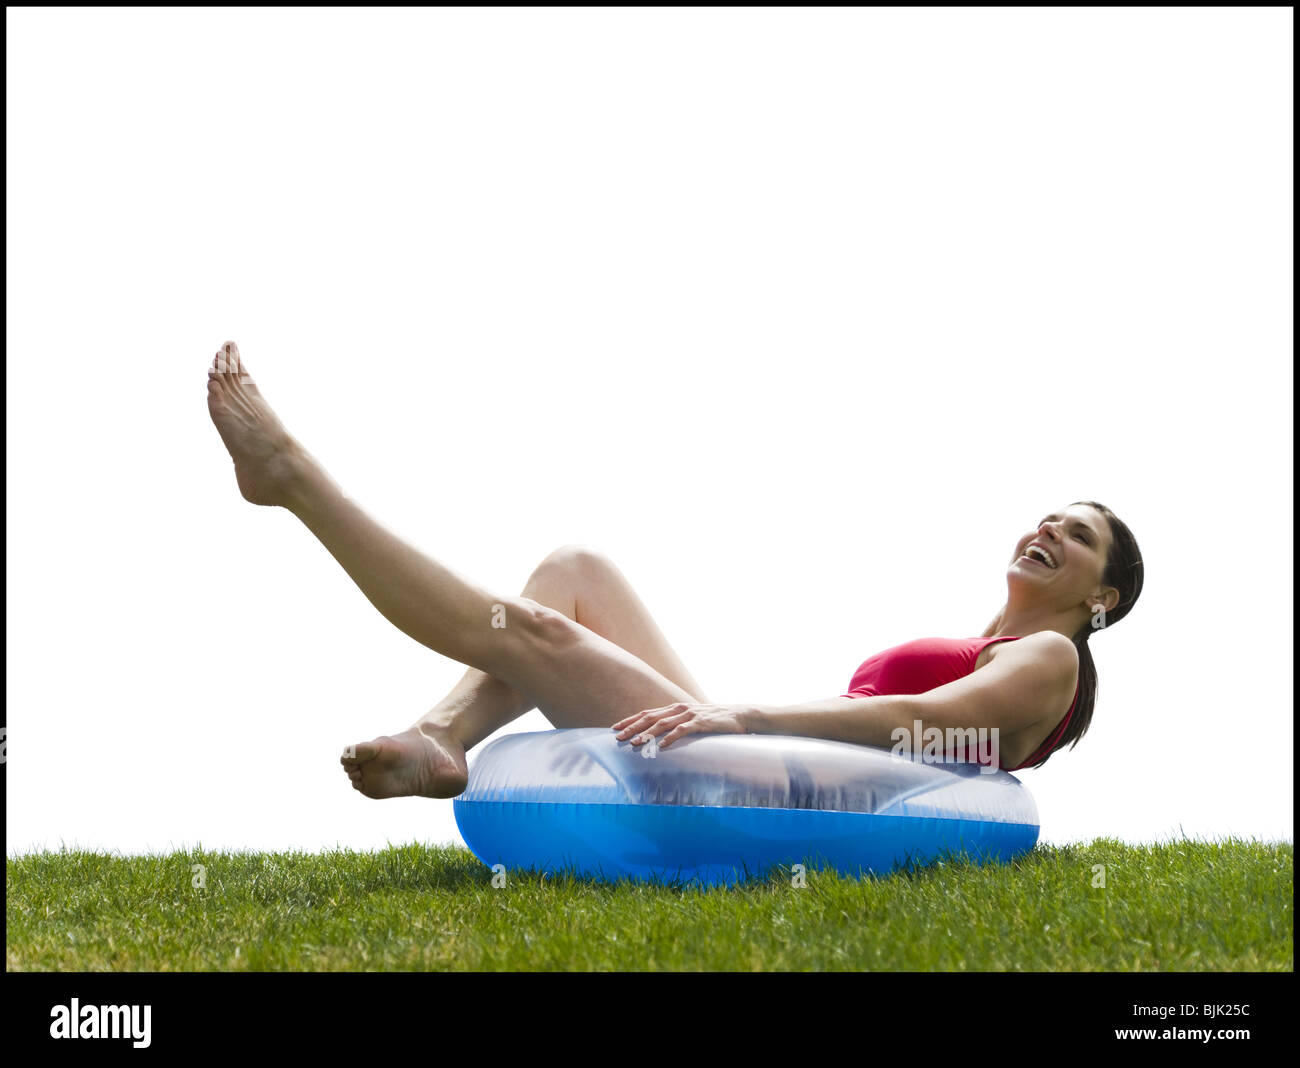 Woman in bikini lying in swimming ring on grass smiling Stock Photo